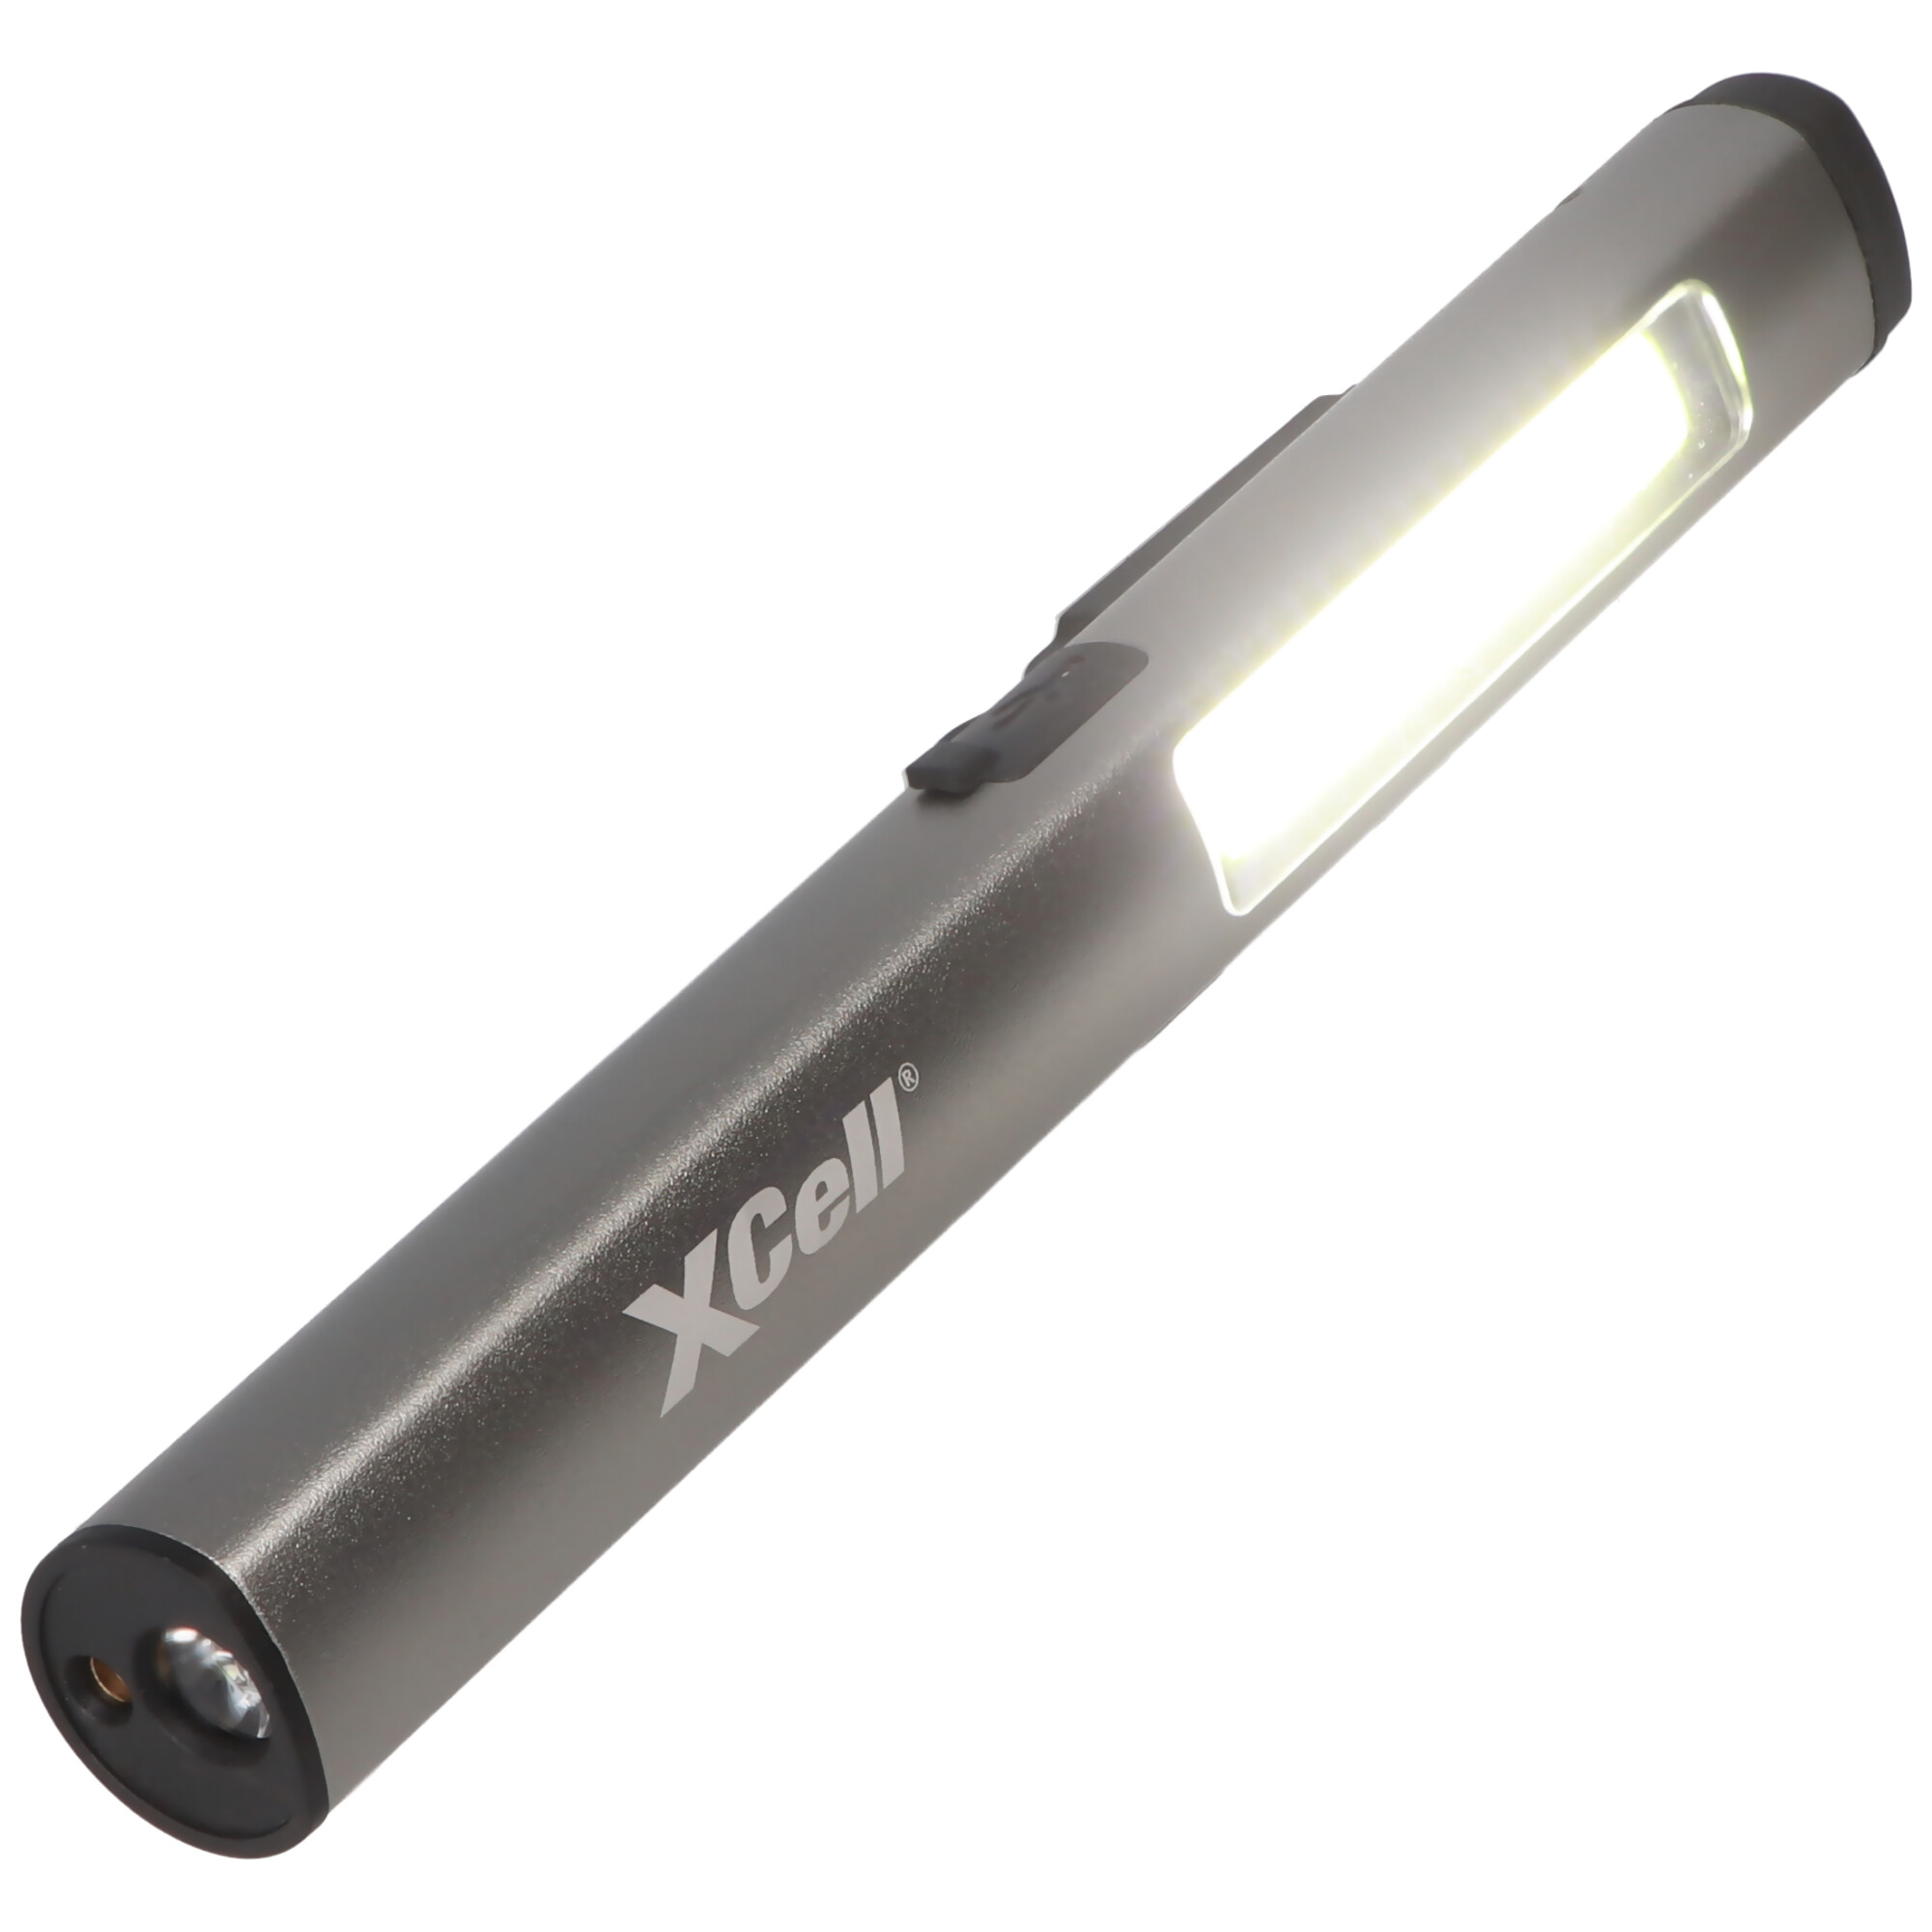 LED Taschenlampe mit zusätzlichem UV- und Laserlicht sowie seitlicher LED-Lichtleiste, magnetischer Clip, integrierter Akku sowie USB-C Ladefunktion